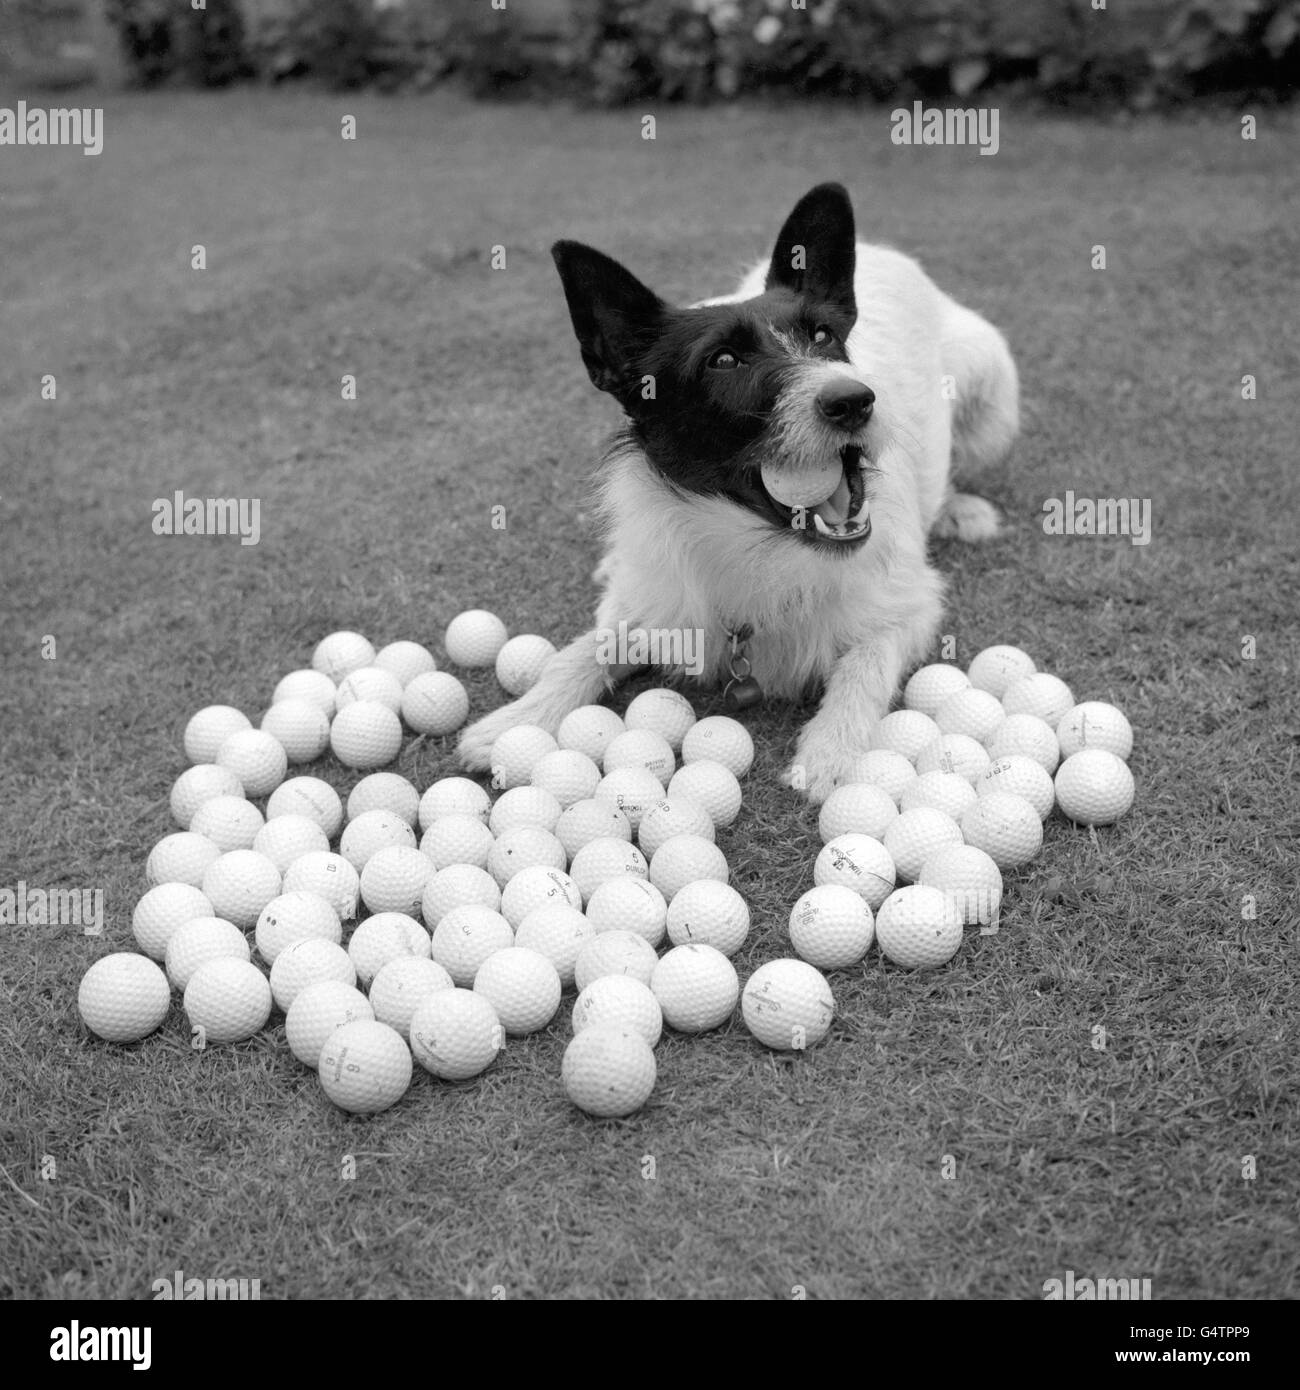 Ricky, ein zweijähriger Cross Russell Terrier, der auf dem nahe gelegenen Golfplatz verlorene Golfbälle abrundet. Besitzer Daisy Roberts von King's Place, North Wales, schätzt, dass er etwa tausend Bälle gefunden hat Stockfoto